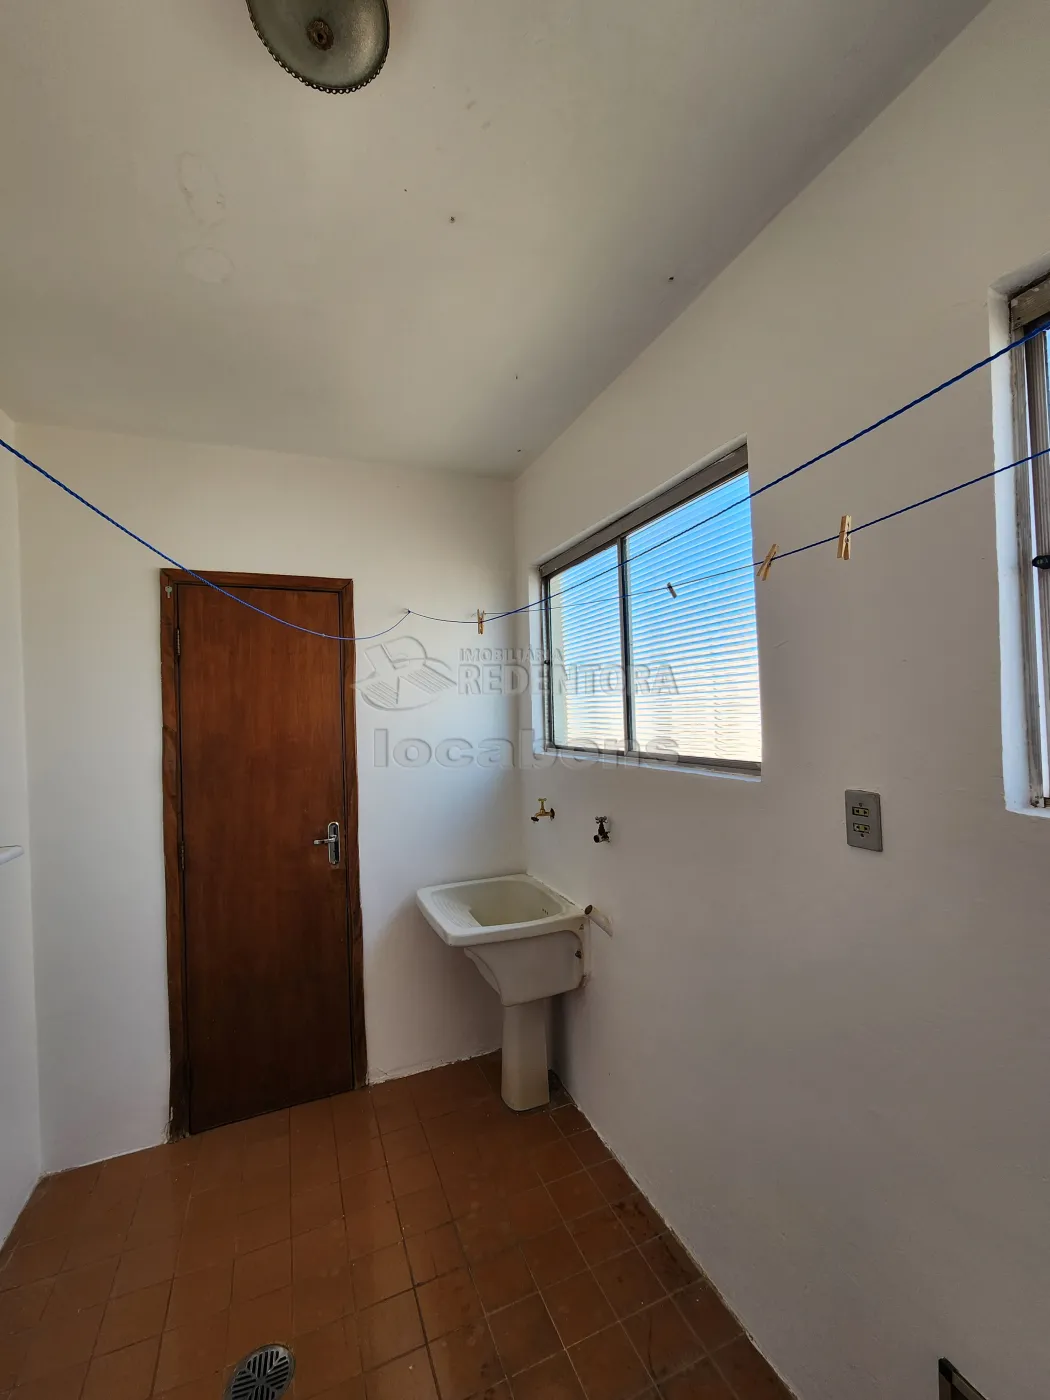 Alugar Apartamento / Padrão em São José do Rio Preto apenas R$ 1.700,00 - Foto 14